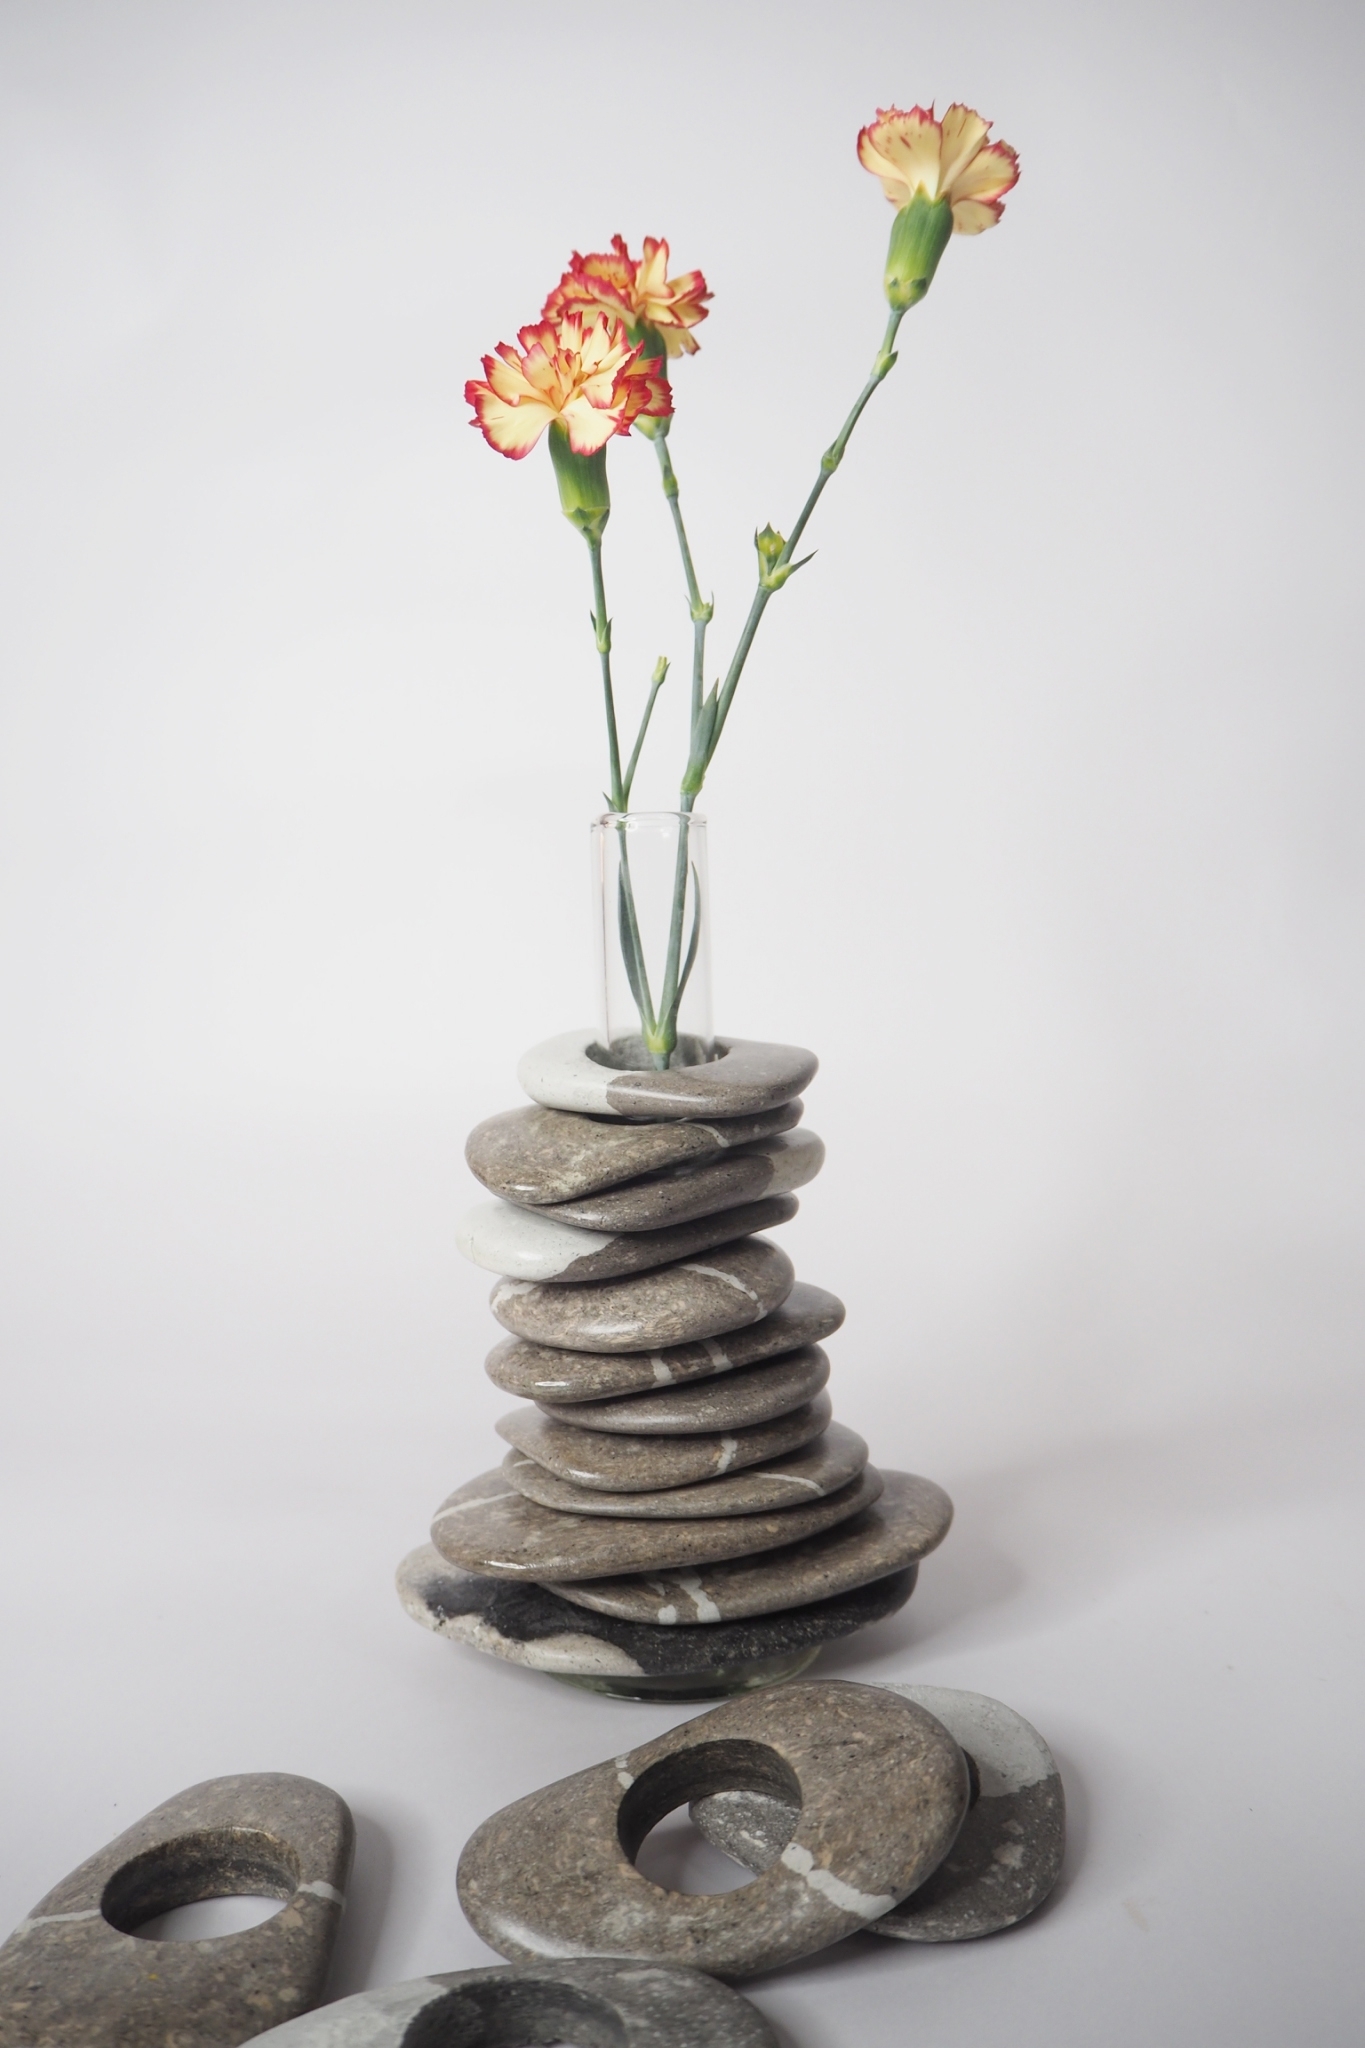 103PAPER no.46 (Paper Rock / Paper Rock Magnet / Paper Rock Vase)